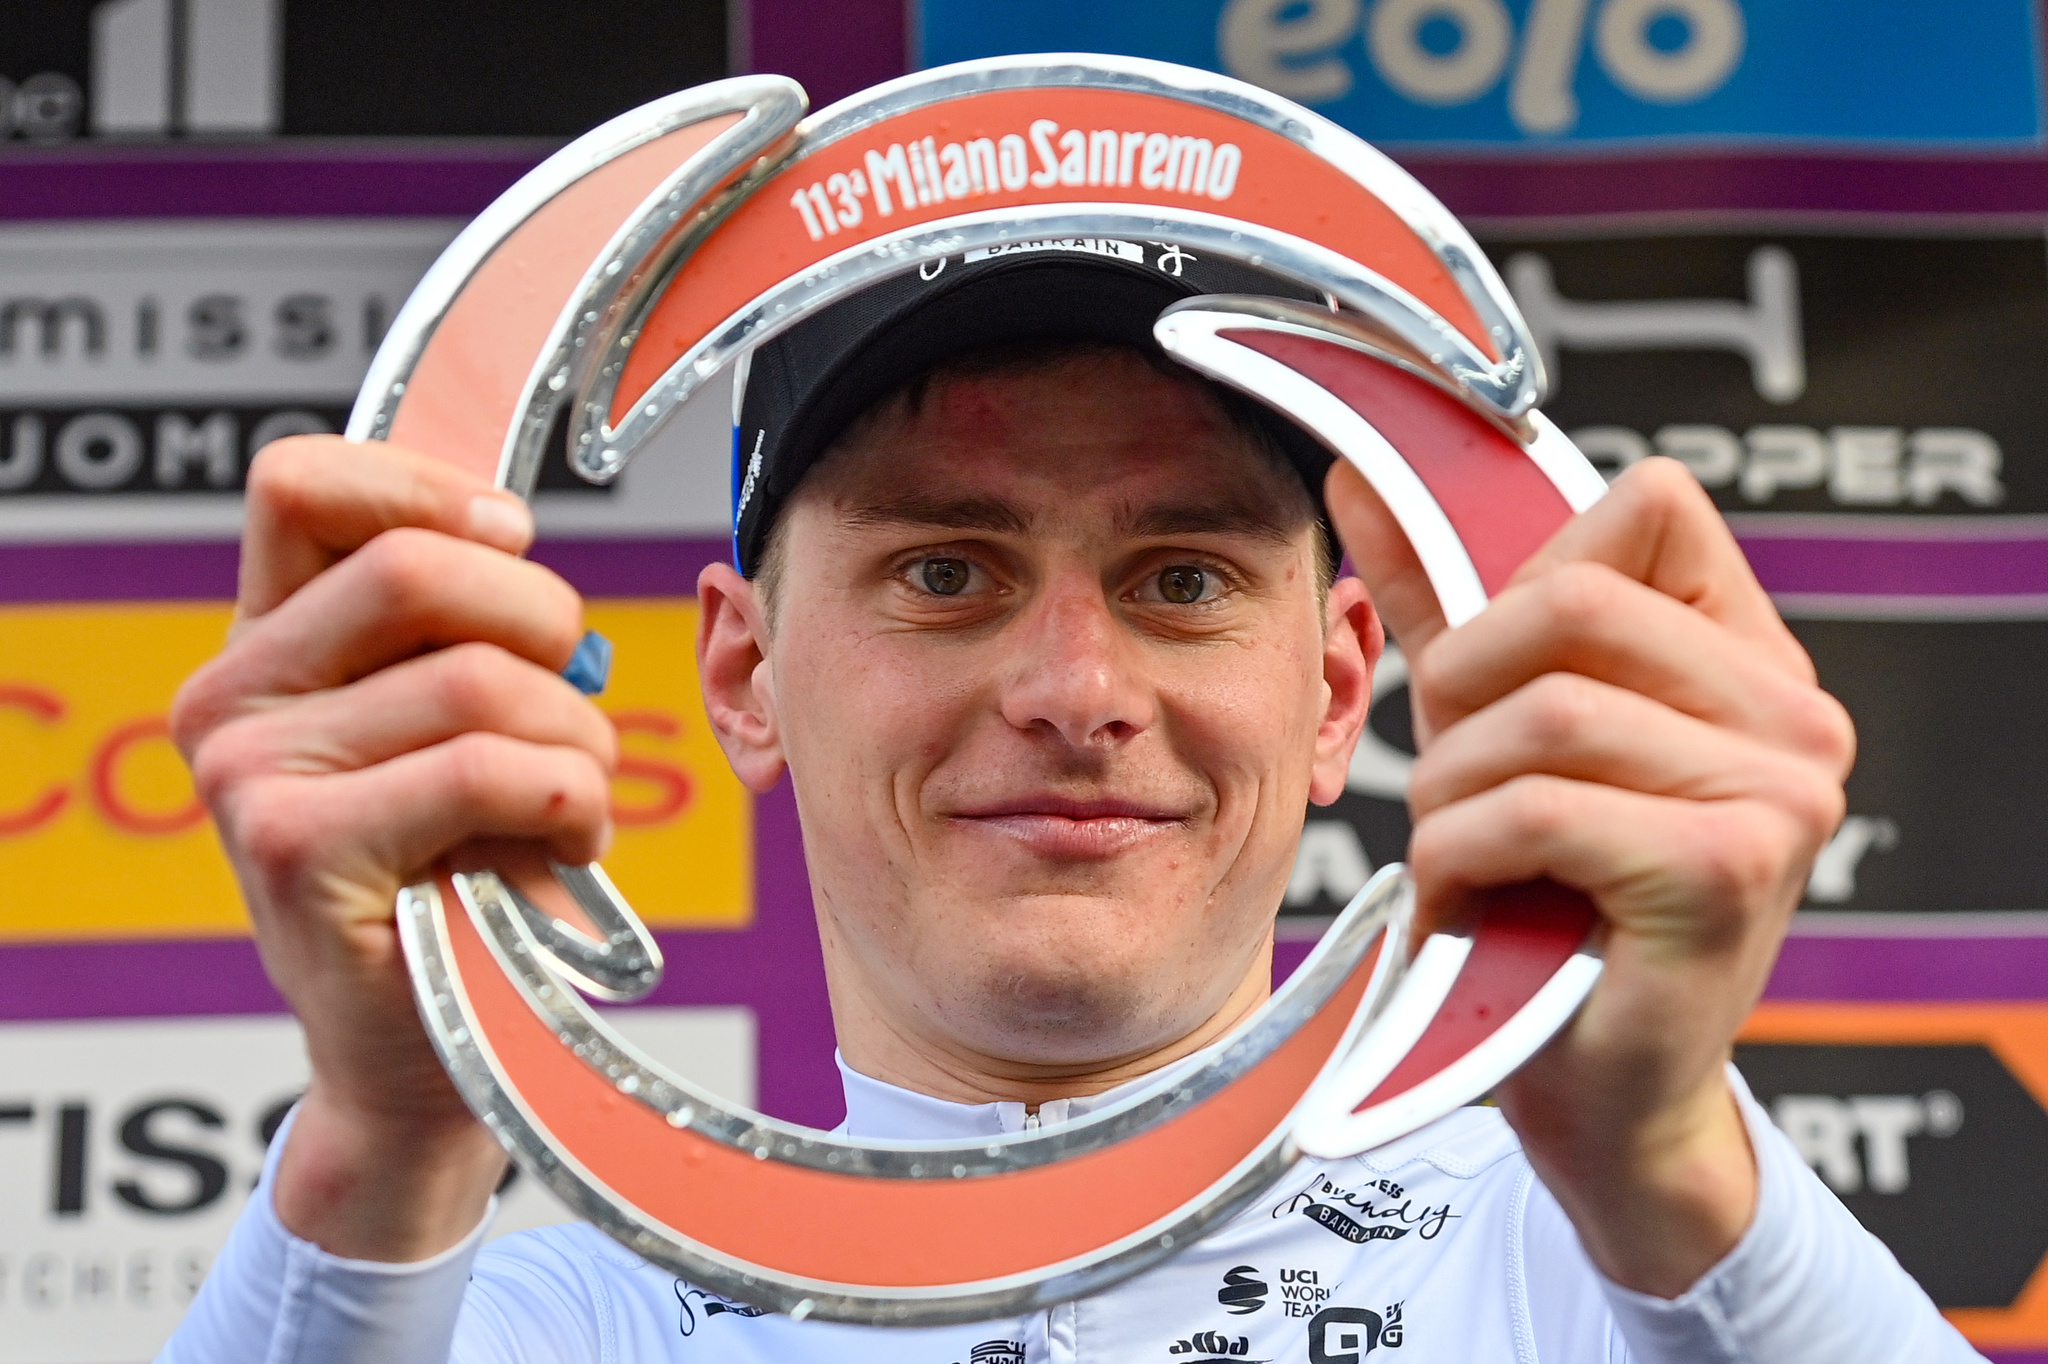 Mediolan-San Remo 2022. Matej Mohoric: „Byłem zaskoczony, jak szybko zjeżdżałem, dlatego nie mogłem doczekać się wyścigu”